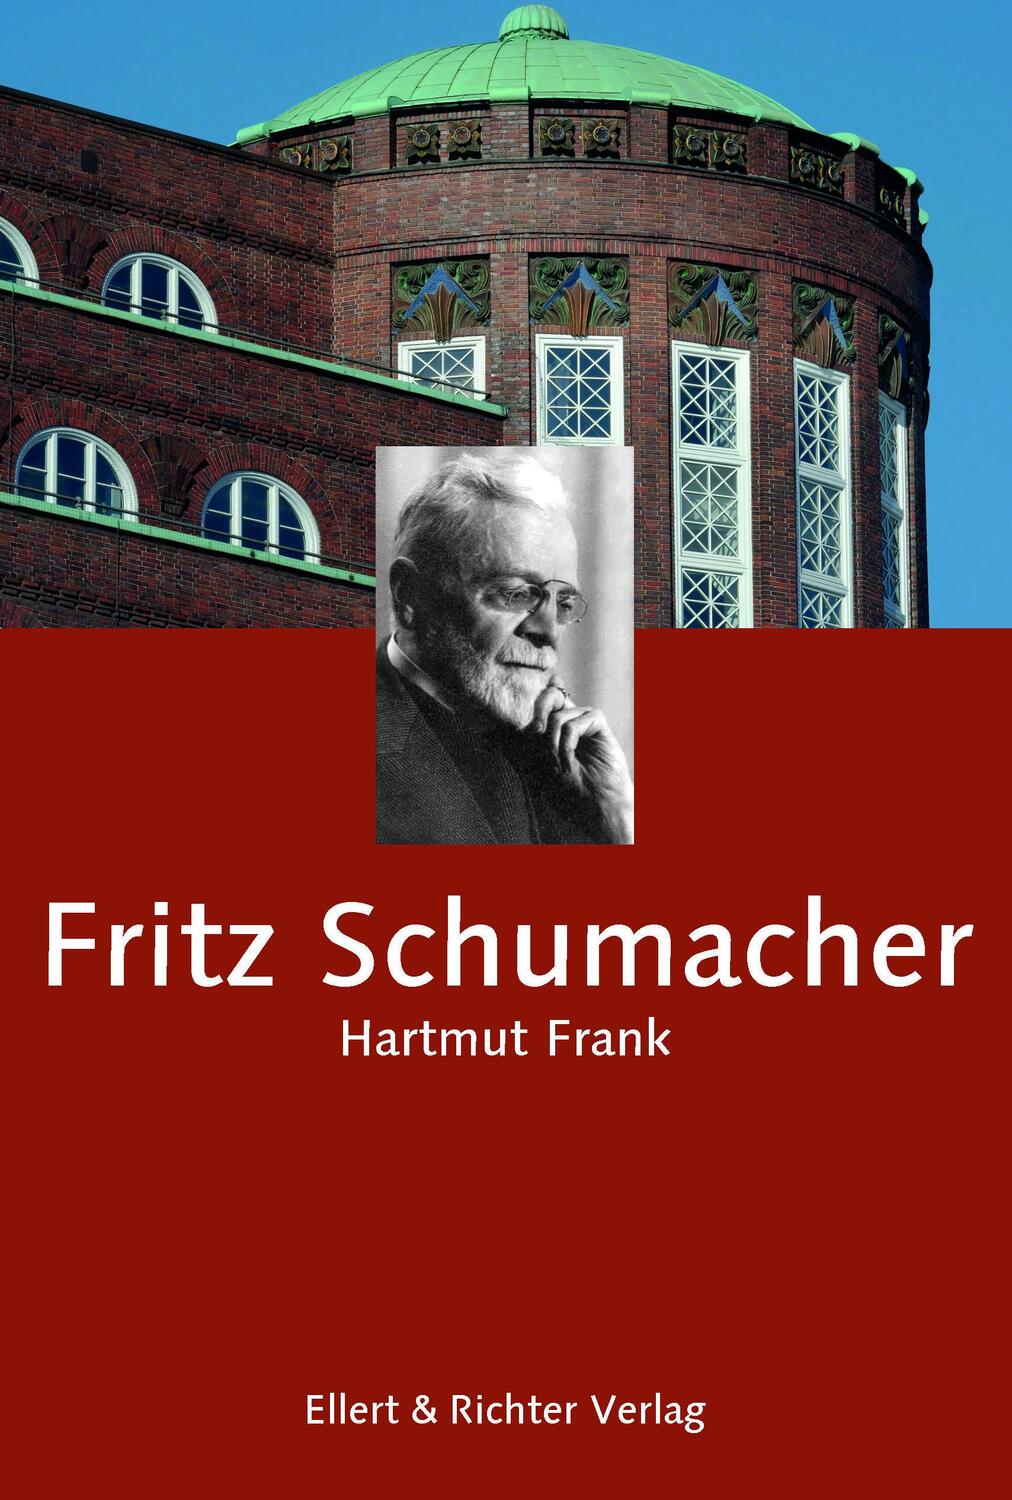 Fritz Schumacher - Frank, Hartmut